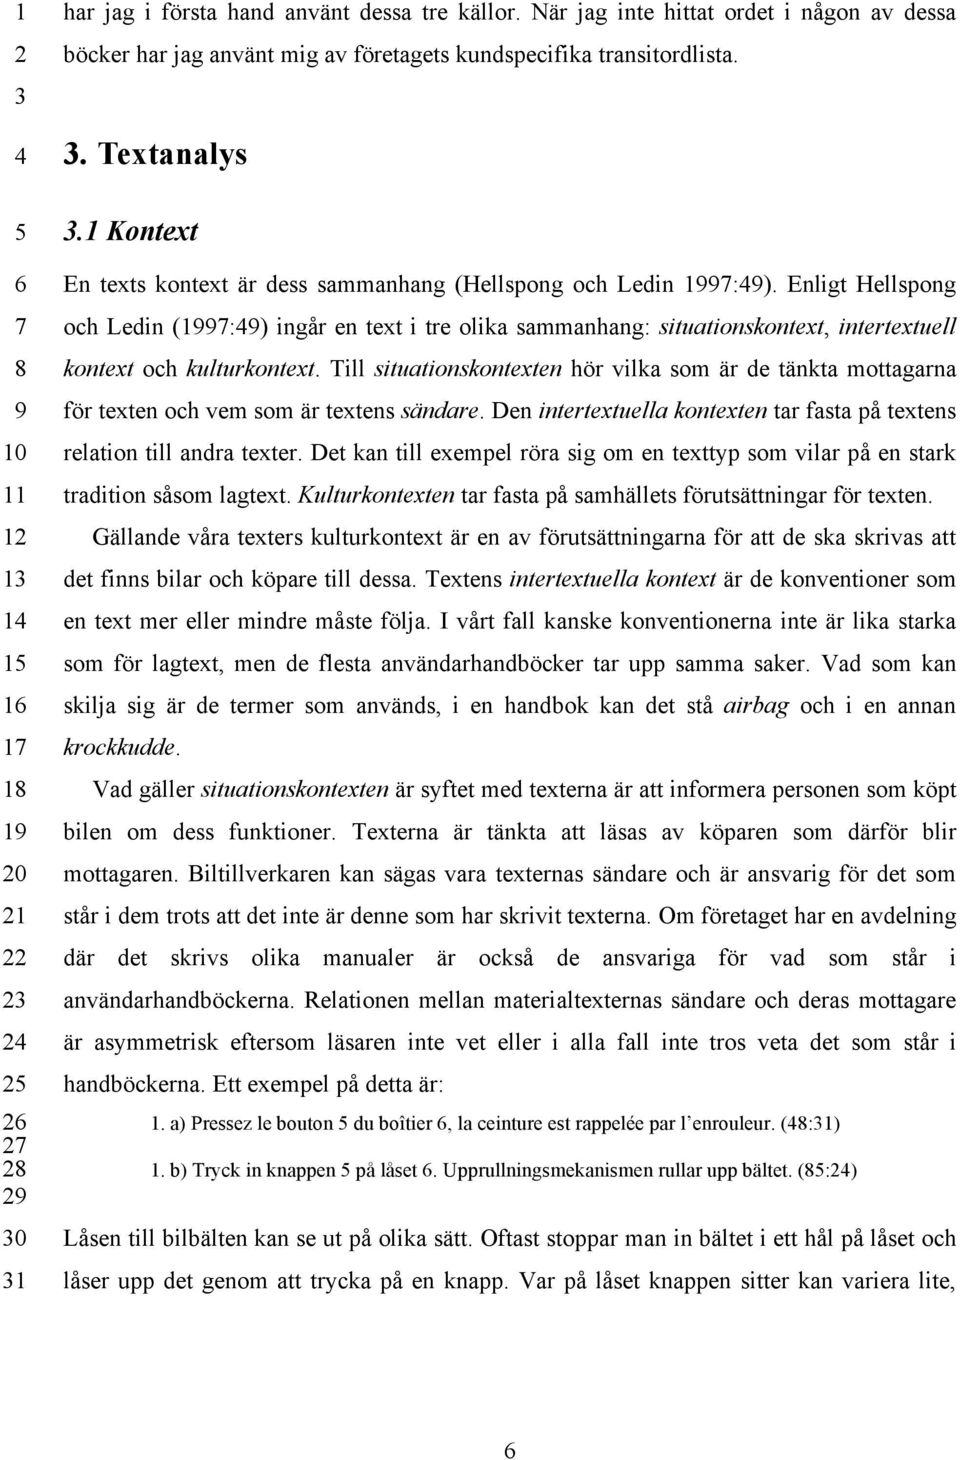 Enligt Hellspong och Ledin (1:) ingår en text i tre olika sammanhang: situationskontext, intertextuell kontext och kulturkontext.